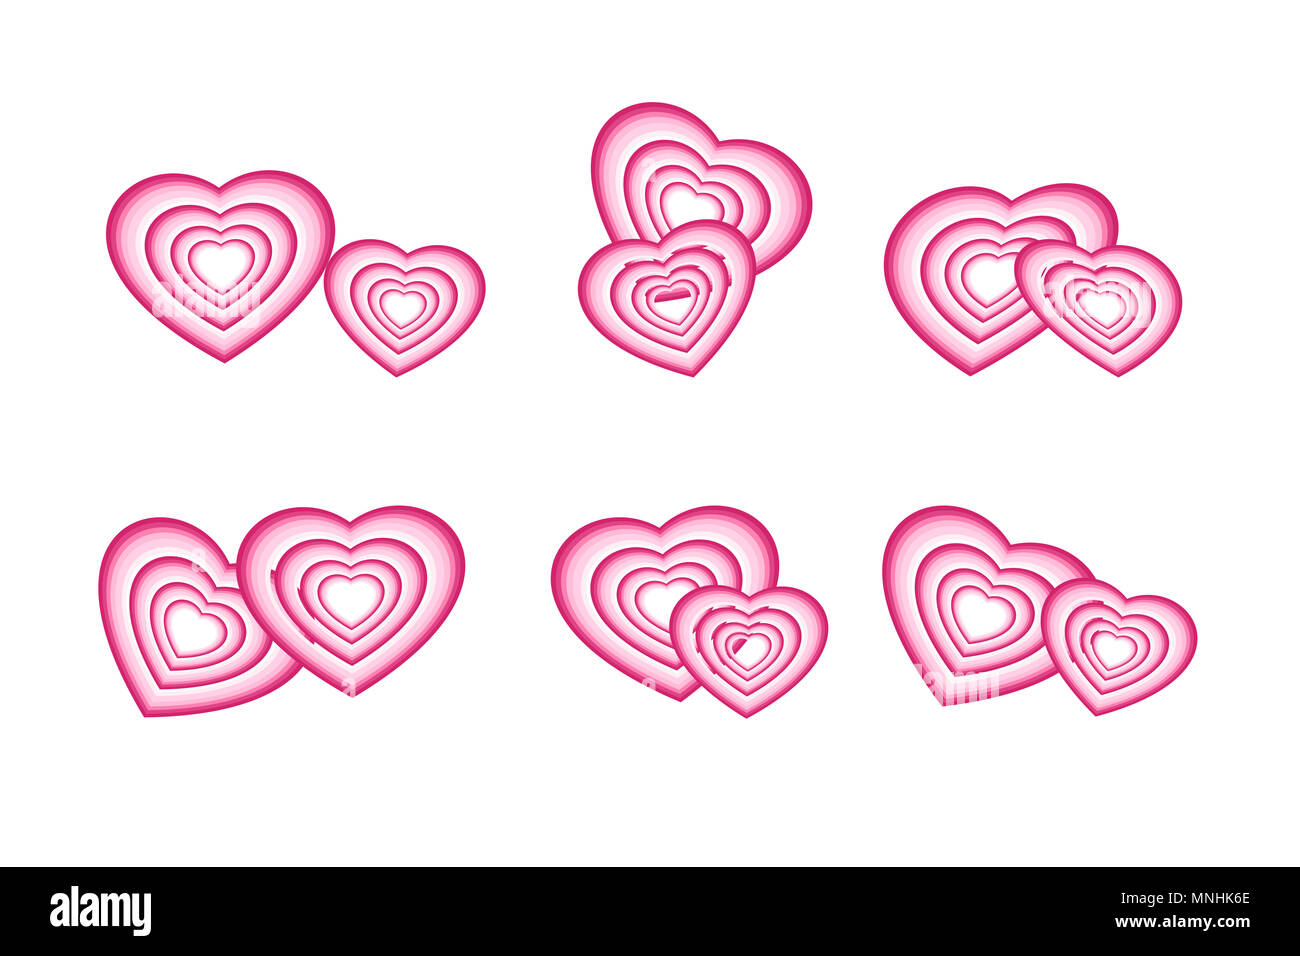 Liebe, Romantik, Valentinstag und Hochzeit Konzepte. Satz von Paar rosa Herzen auf weiß (transparent) Hintergrund isoliert. Stockfoto